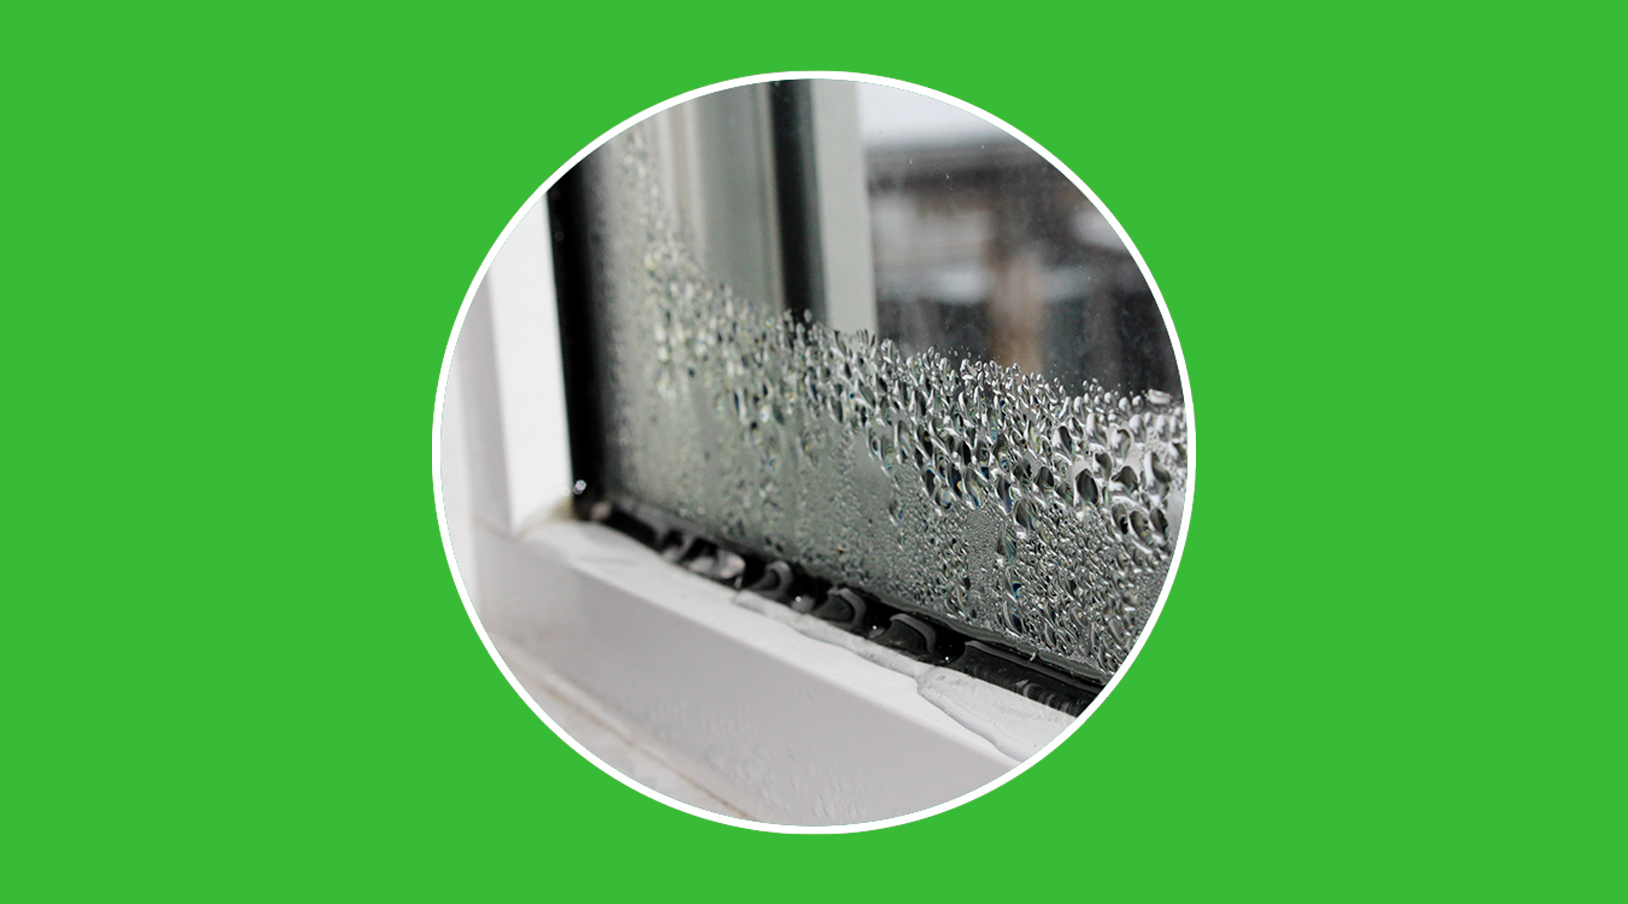 Como aislar correctamente las ventanas del frio, calor y el ruido - Consejos